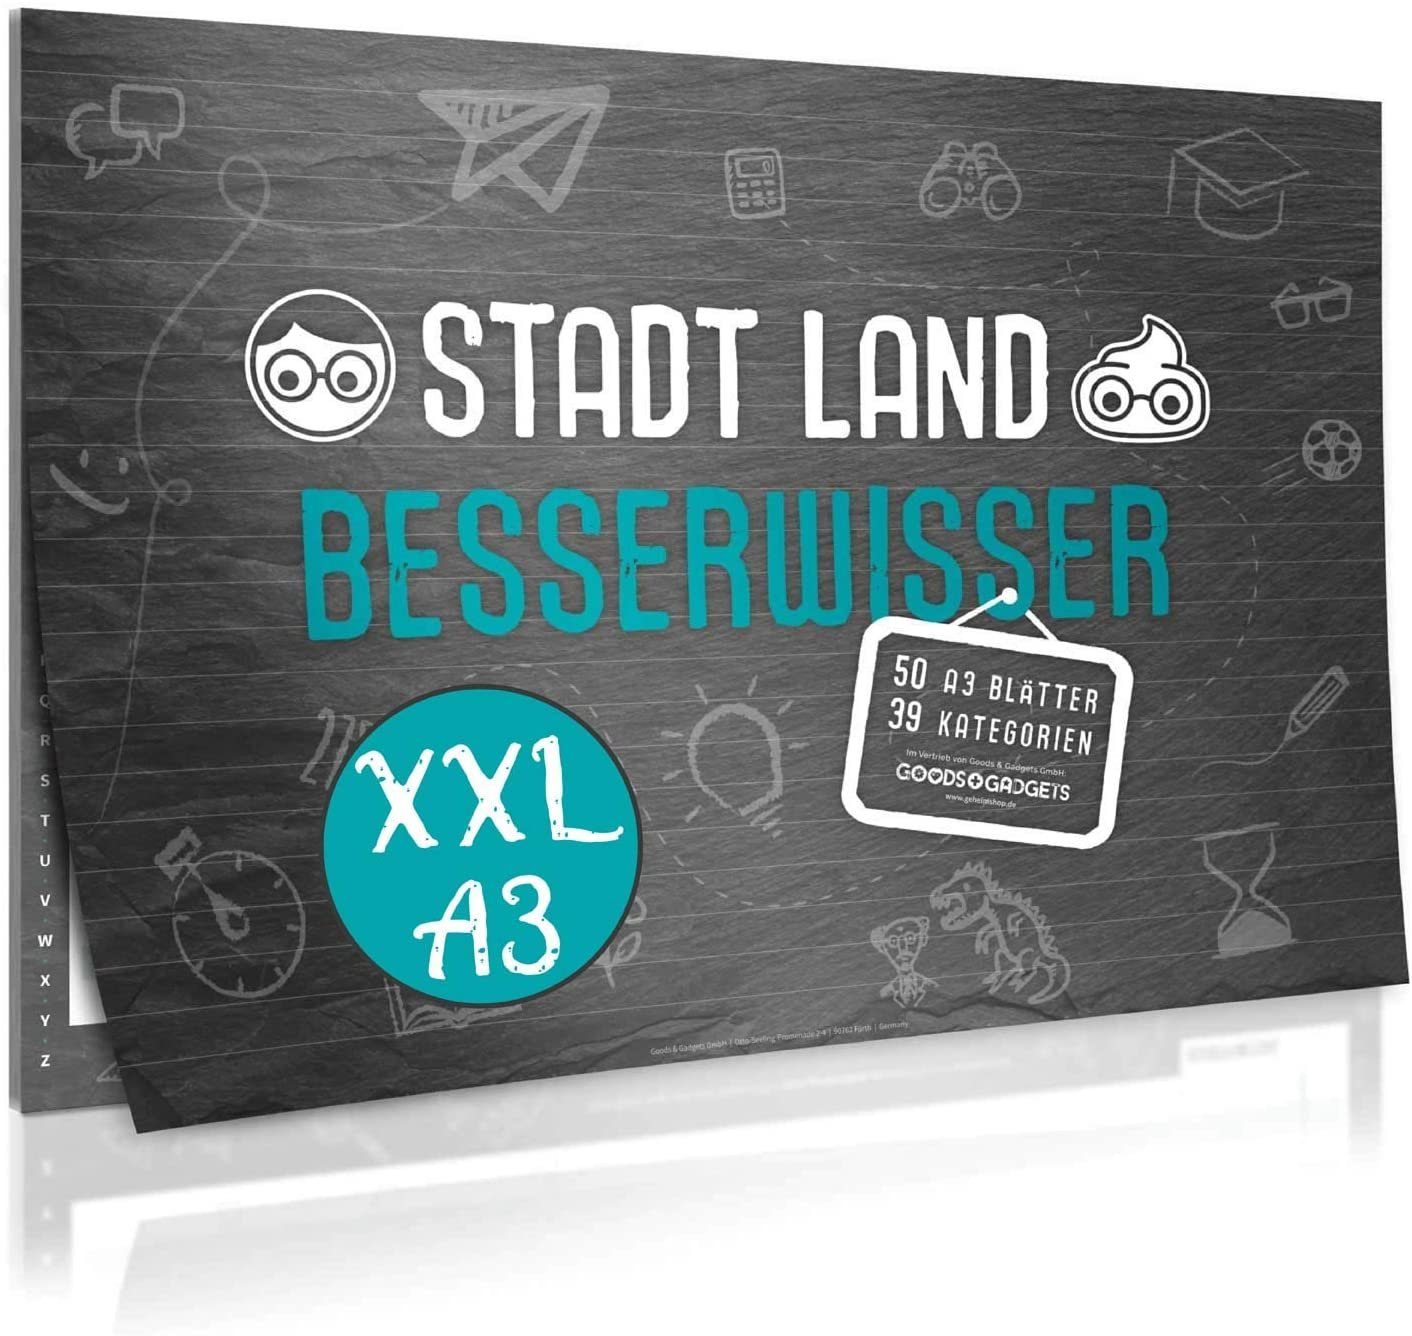 Goods+Gadgets Spiel, Stadt, Land, Besserwisser Block mit 39 Kategorien, Spiele-Klassiker Neuauflage